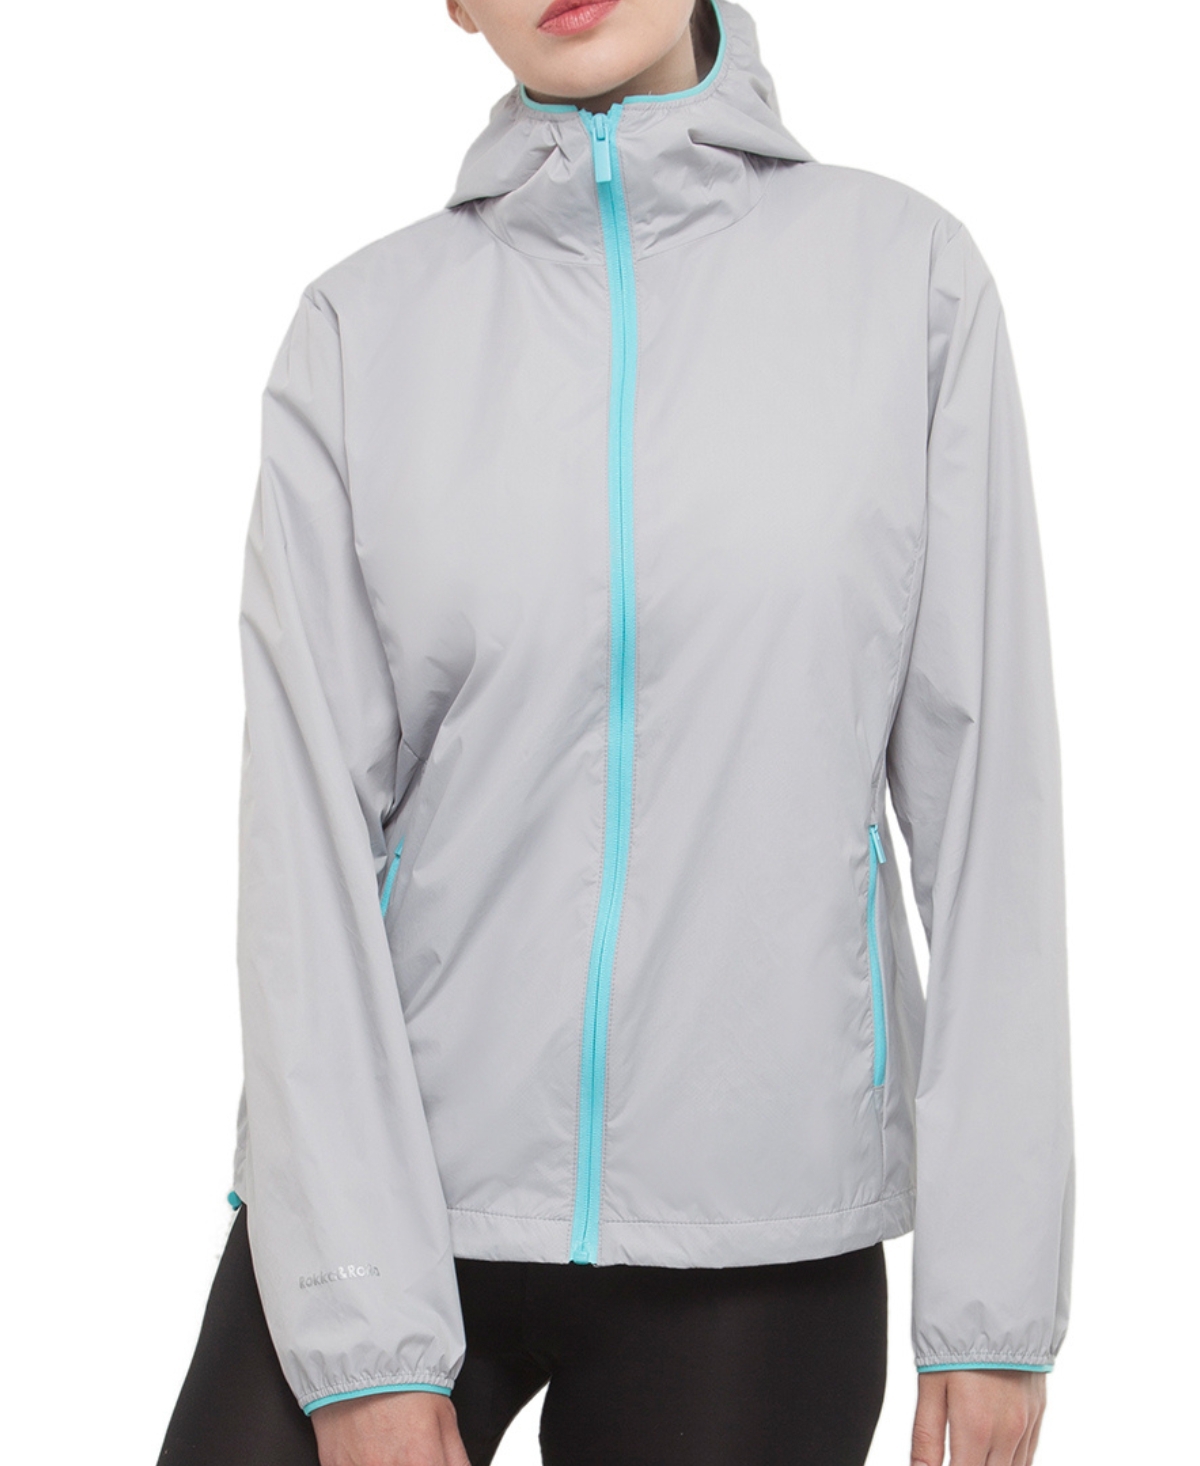 Women's Packable Mesh Lined Jacket Lightweight Windbreaker - Light gray